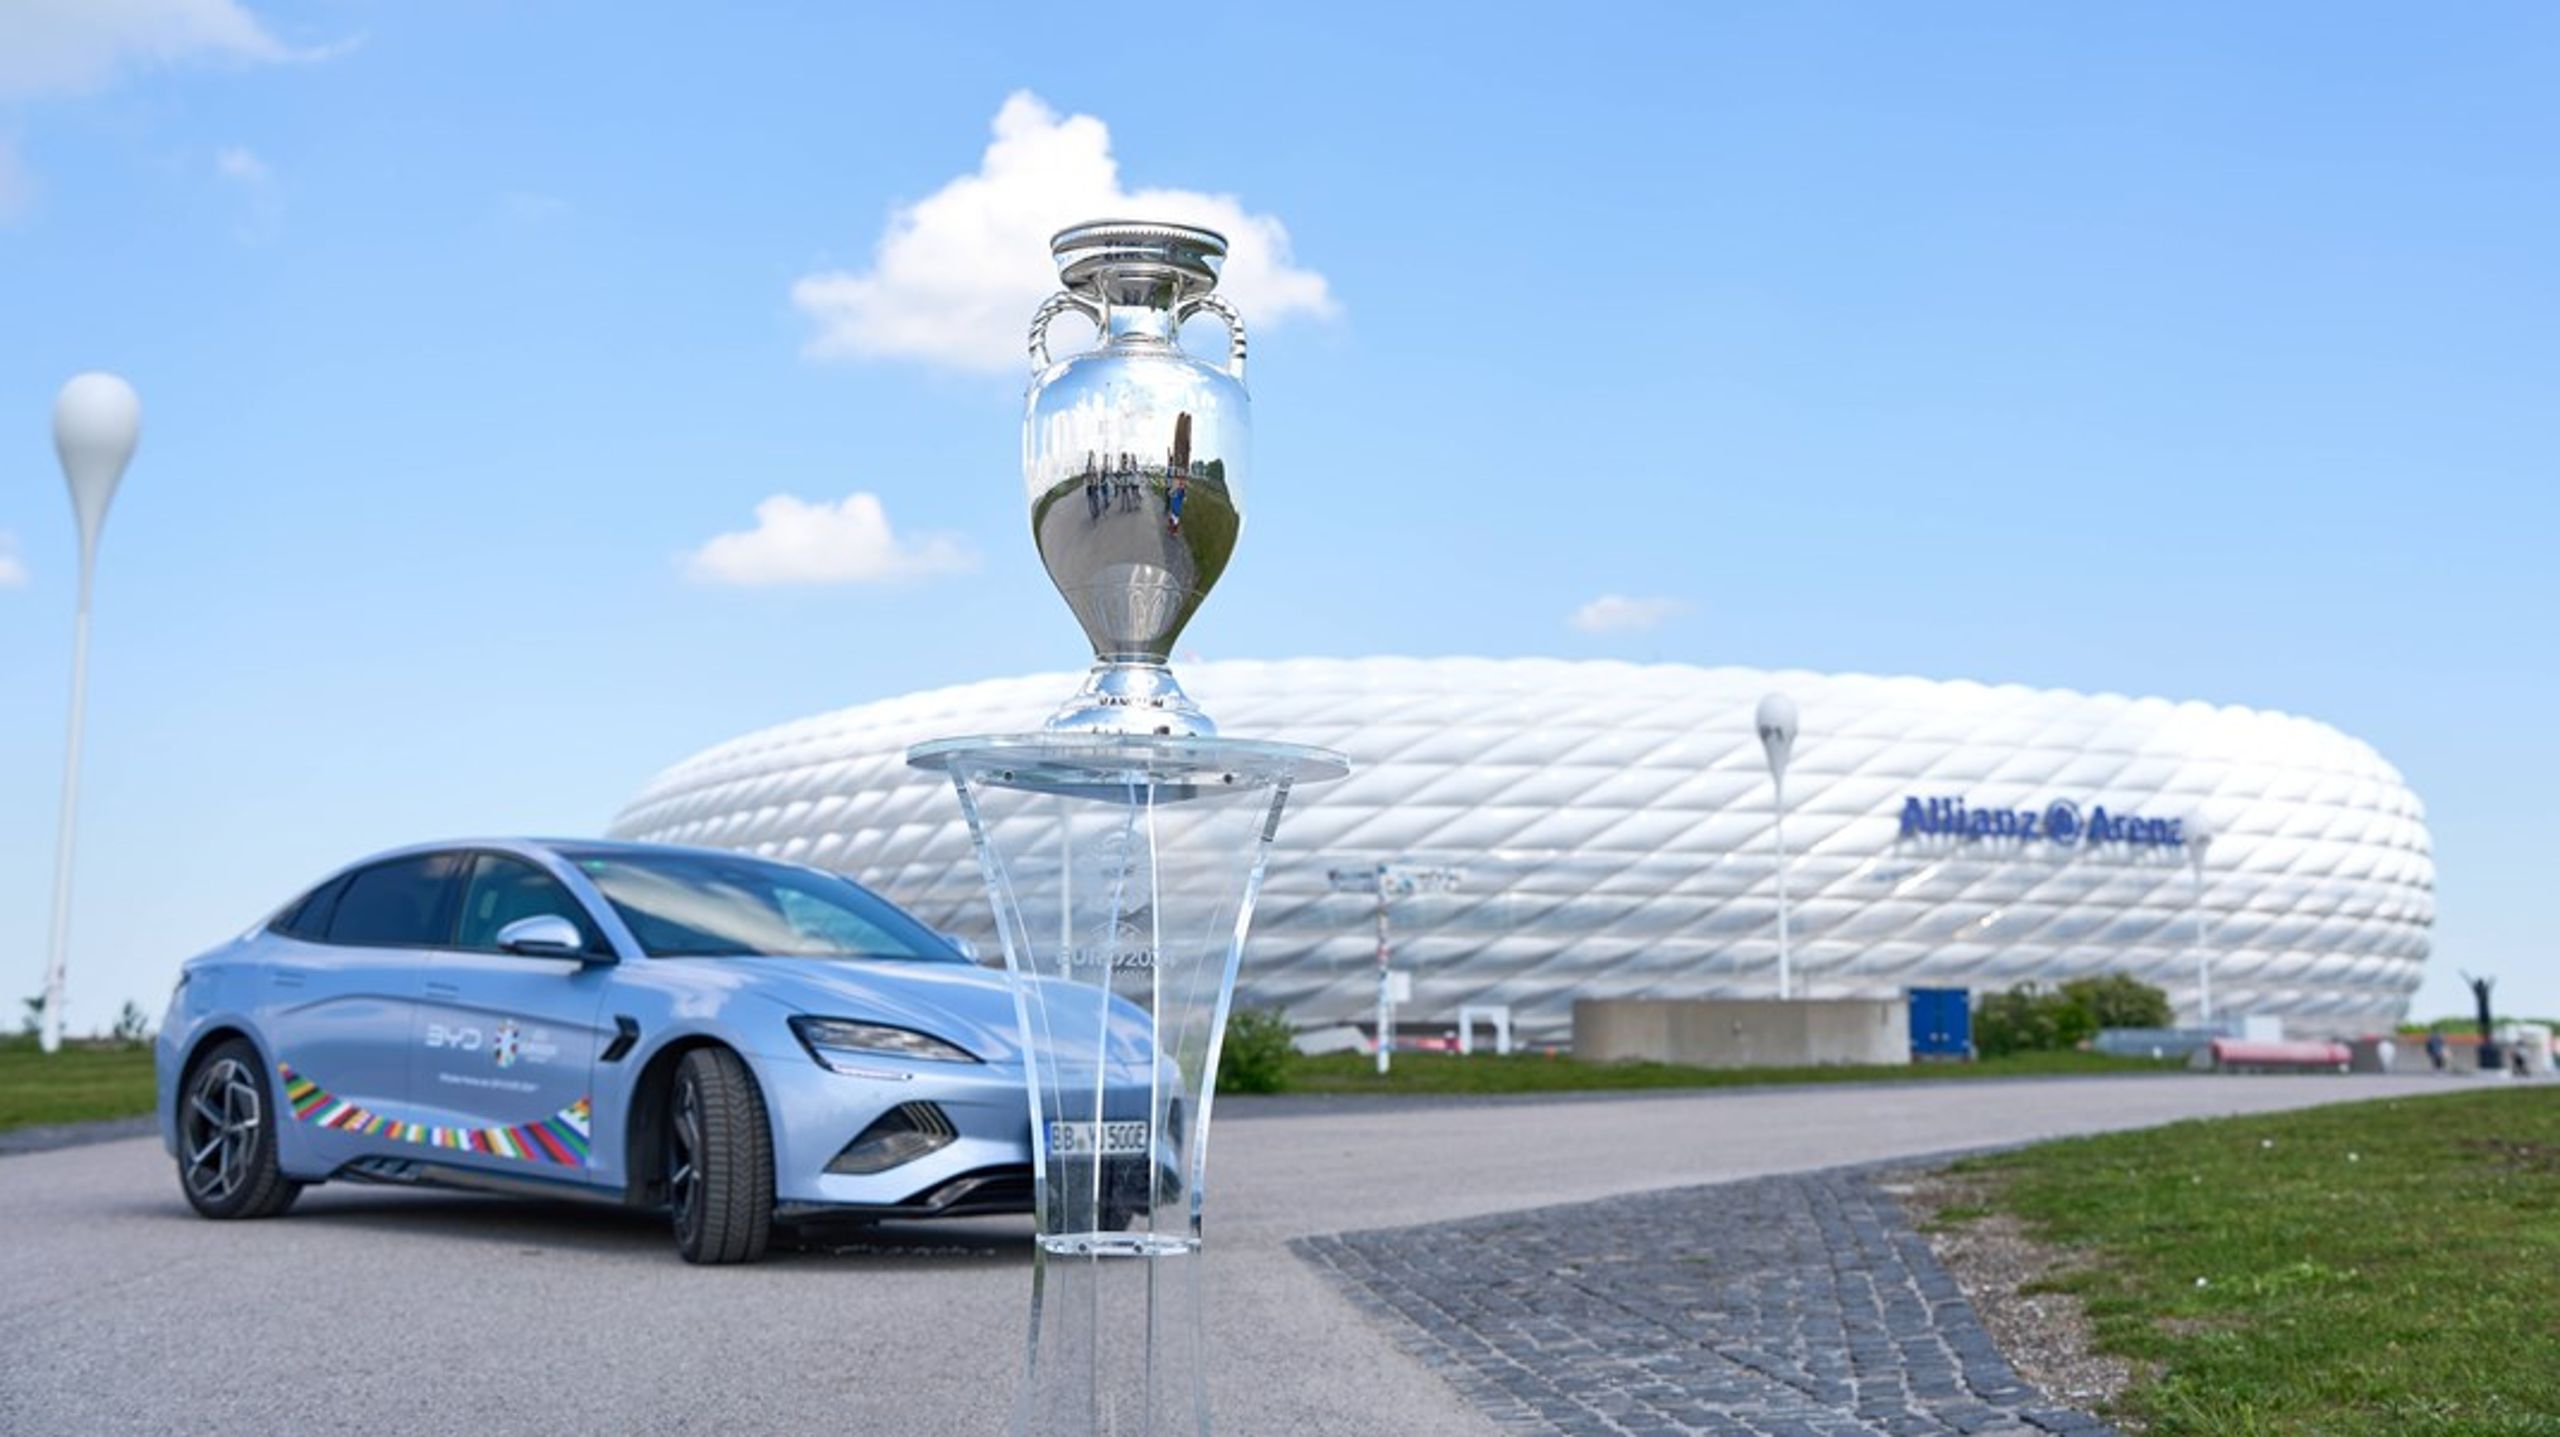 Normalt er Allianz Arena, det store tyske stadion i München, uløseligt forbundet med det tyske mærke Audi. Men i år må den stolte tyske industri overlade pladsen til kinesiske BYD, der er en af hovedsponsorerne ved sommerens EM-slutrunde i Tyskland.